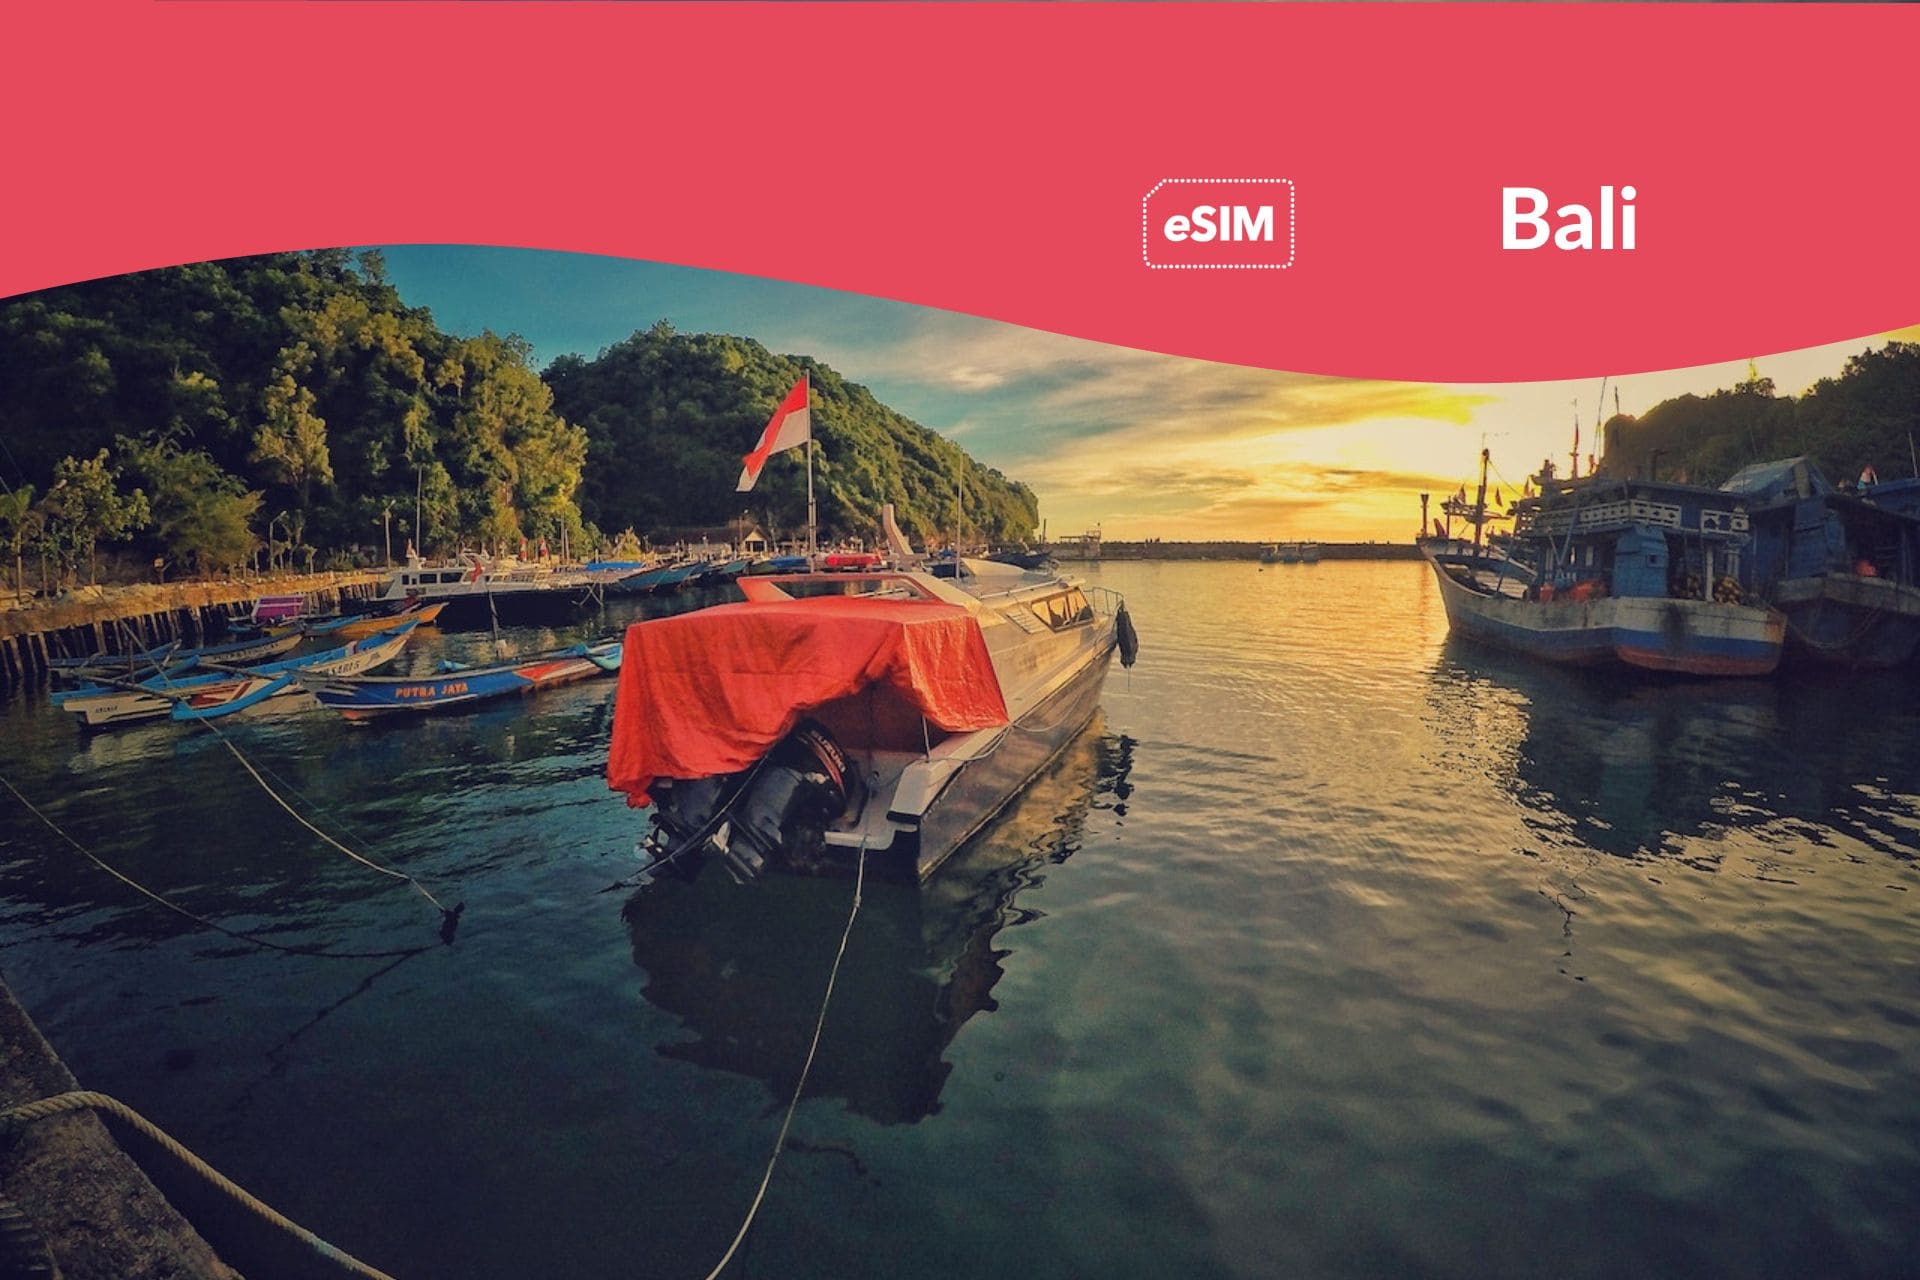 Tarjeta SIM de viaje prepago para Indonesia y Bali: tres